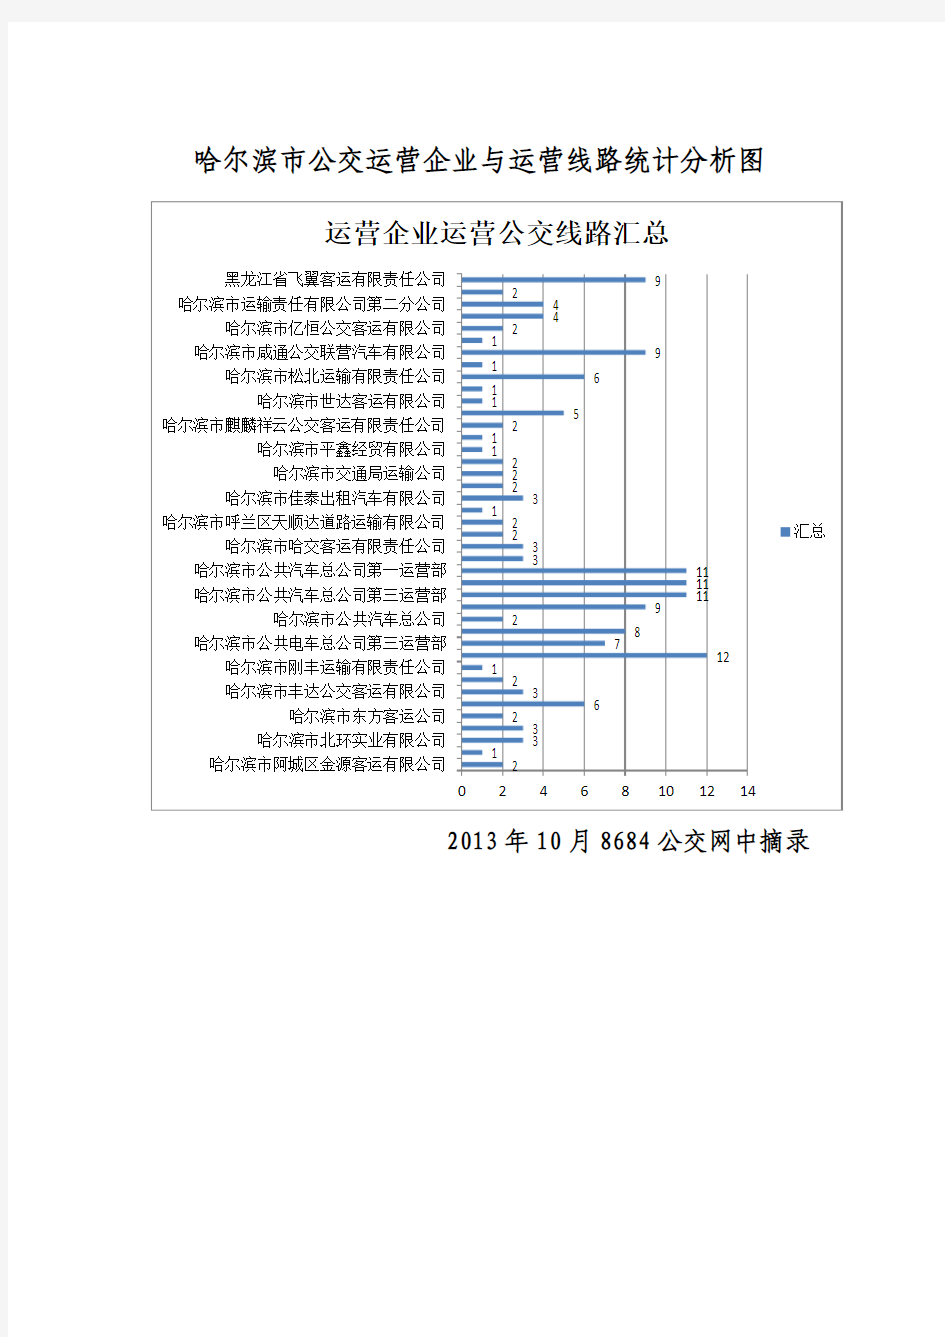 哈尔滨市公交运营企业与运营线路统计分析图